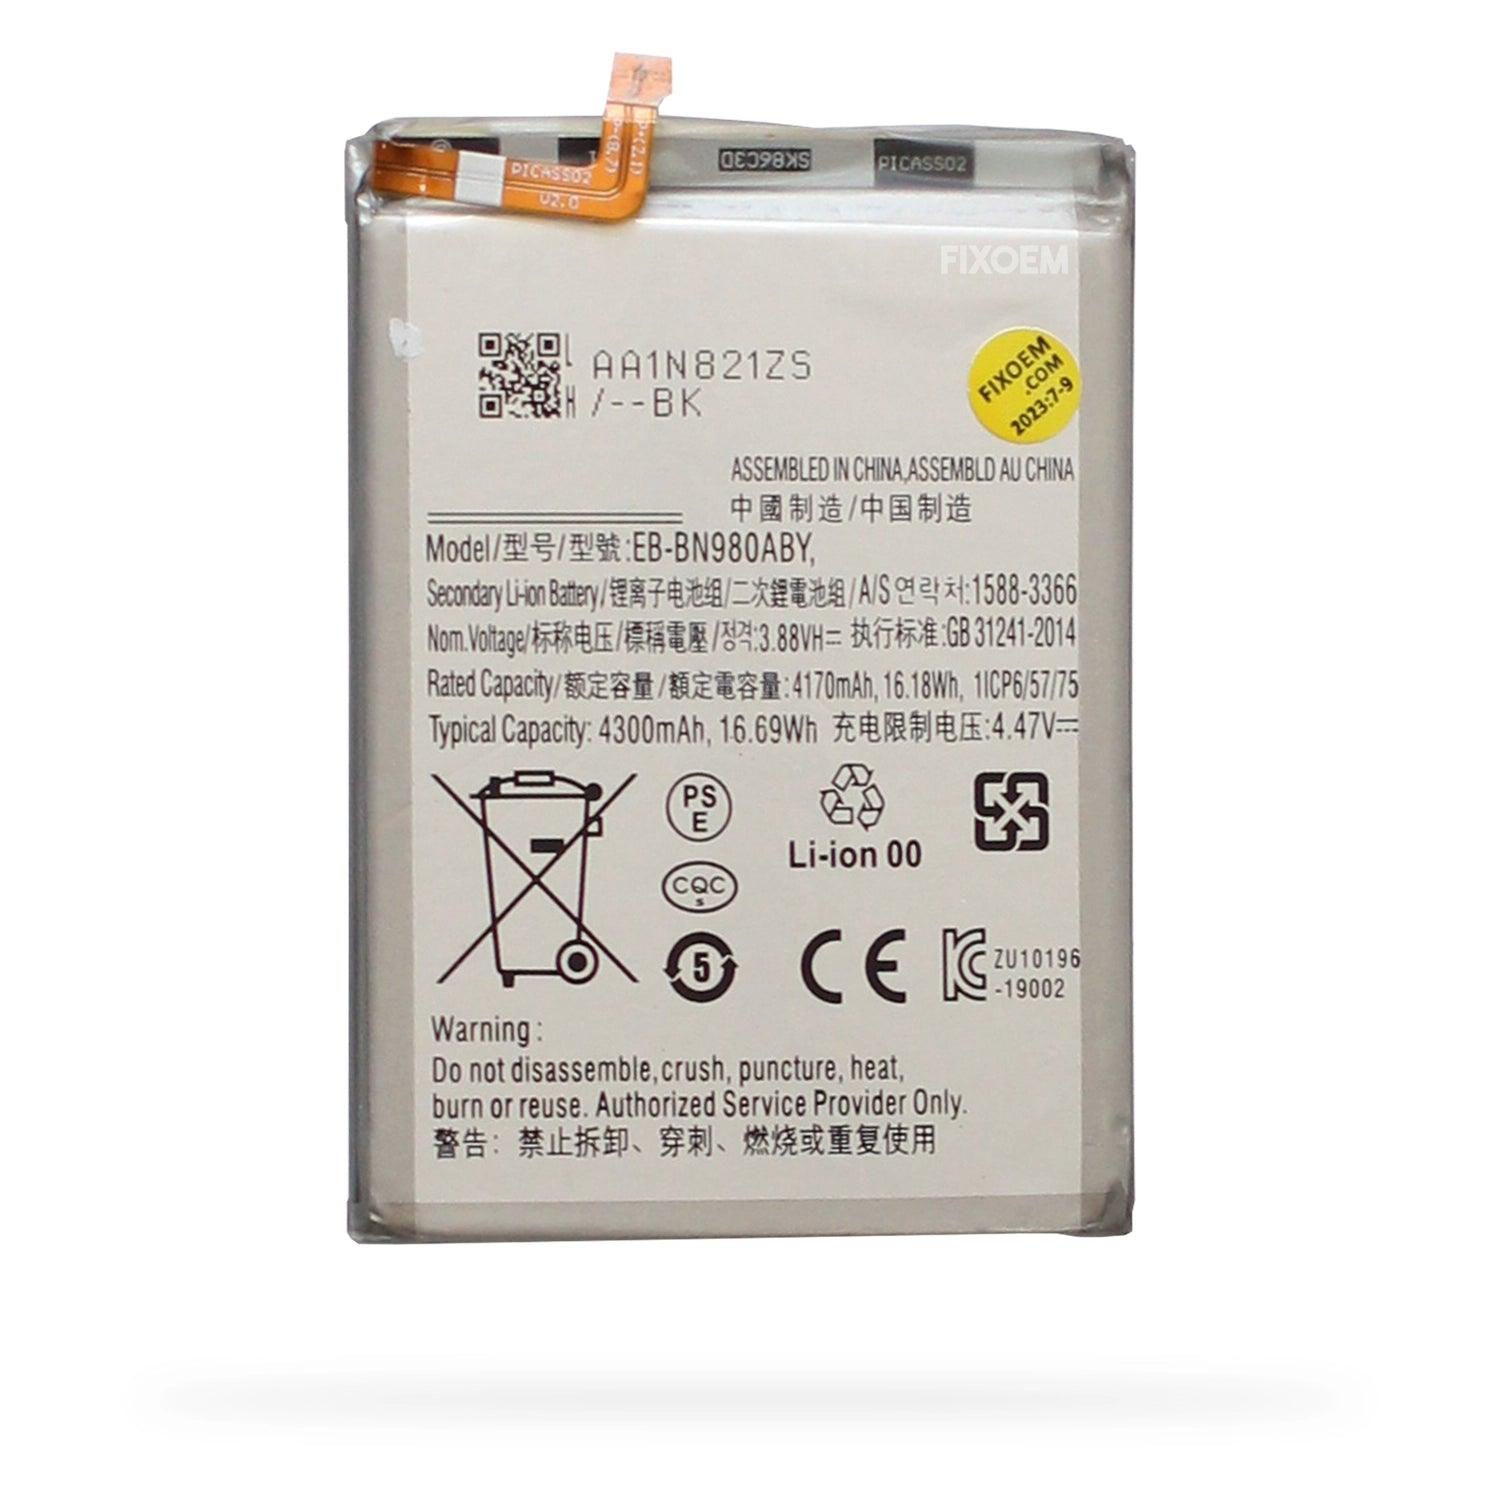 Bateria Samsung Note 20 Eb-bn980aby a solo $ 150.00 Refaccion y puestos celulares, refurbish y microelectronica.- FixOEM